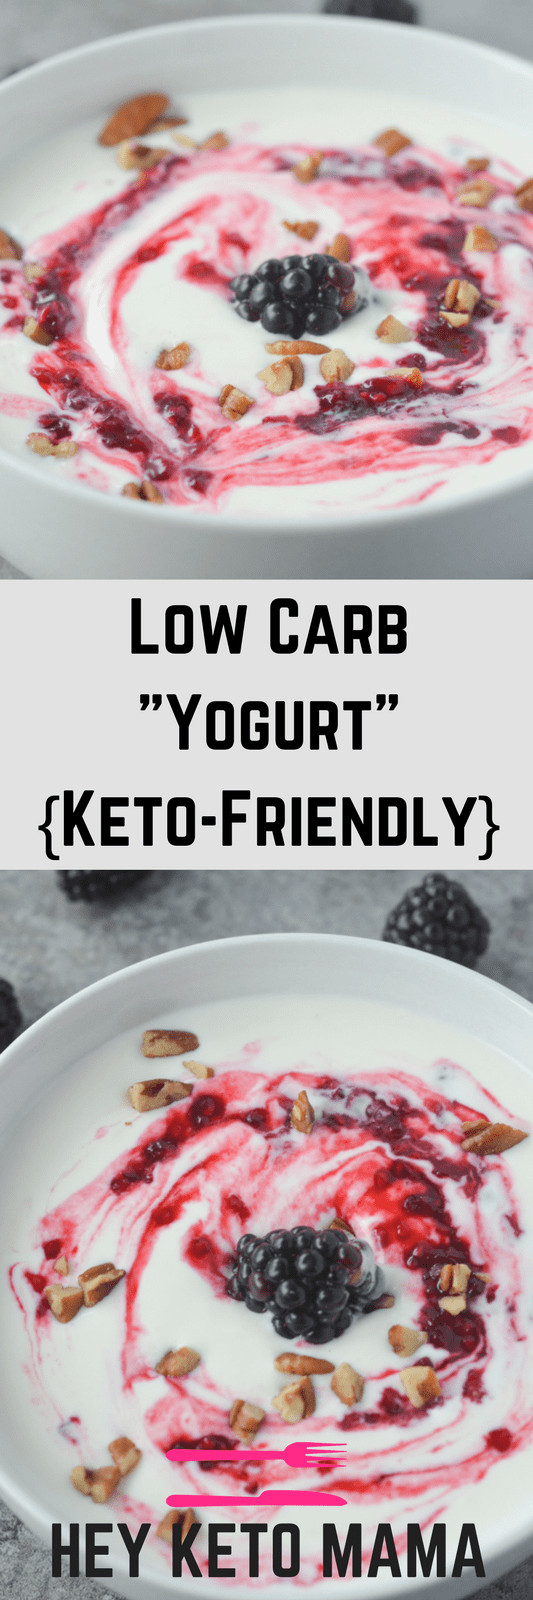 Yogurt On Keto Diet
 Low Carb "Yogurt" Keto Friendly Hey Keto Mama